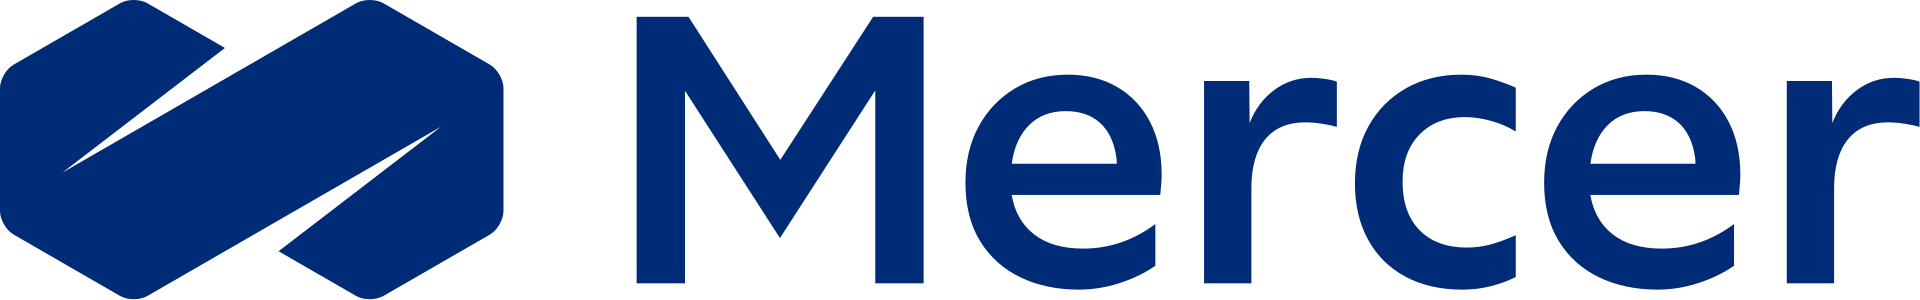 Mercer Brand Logo